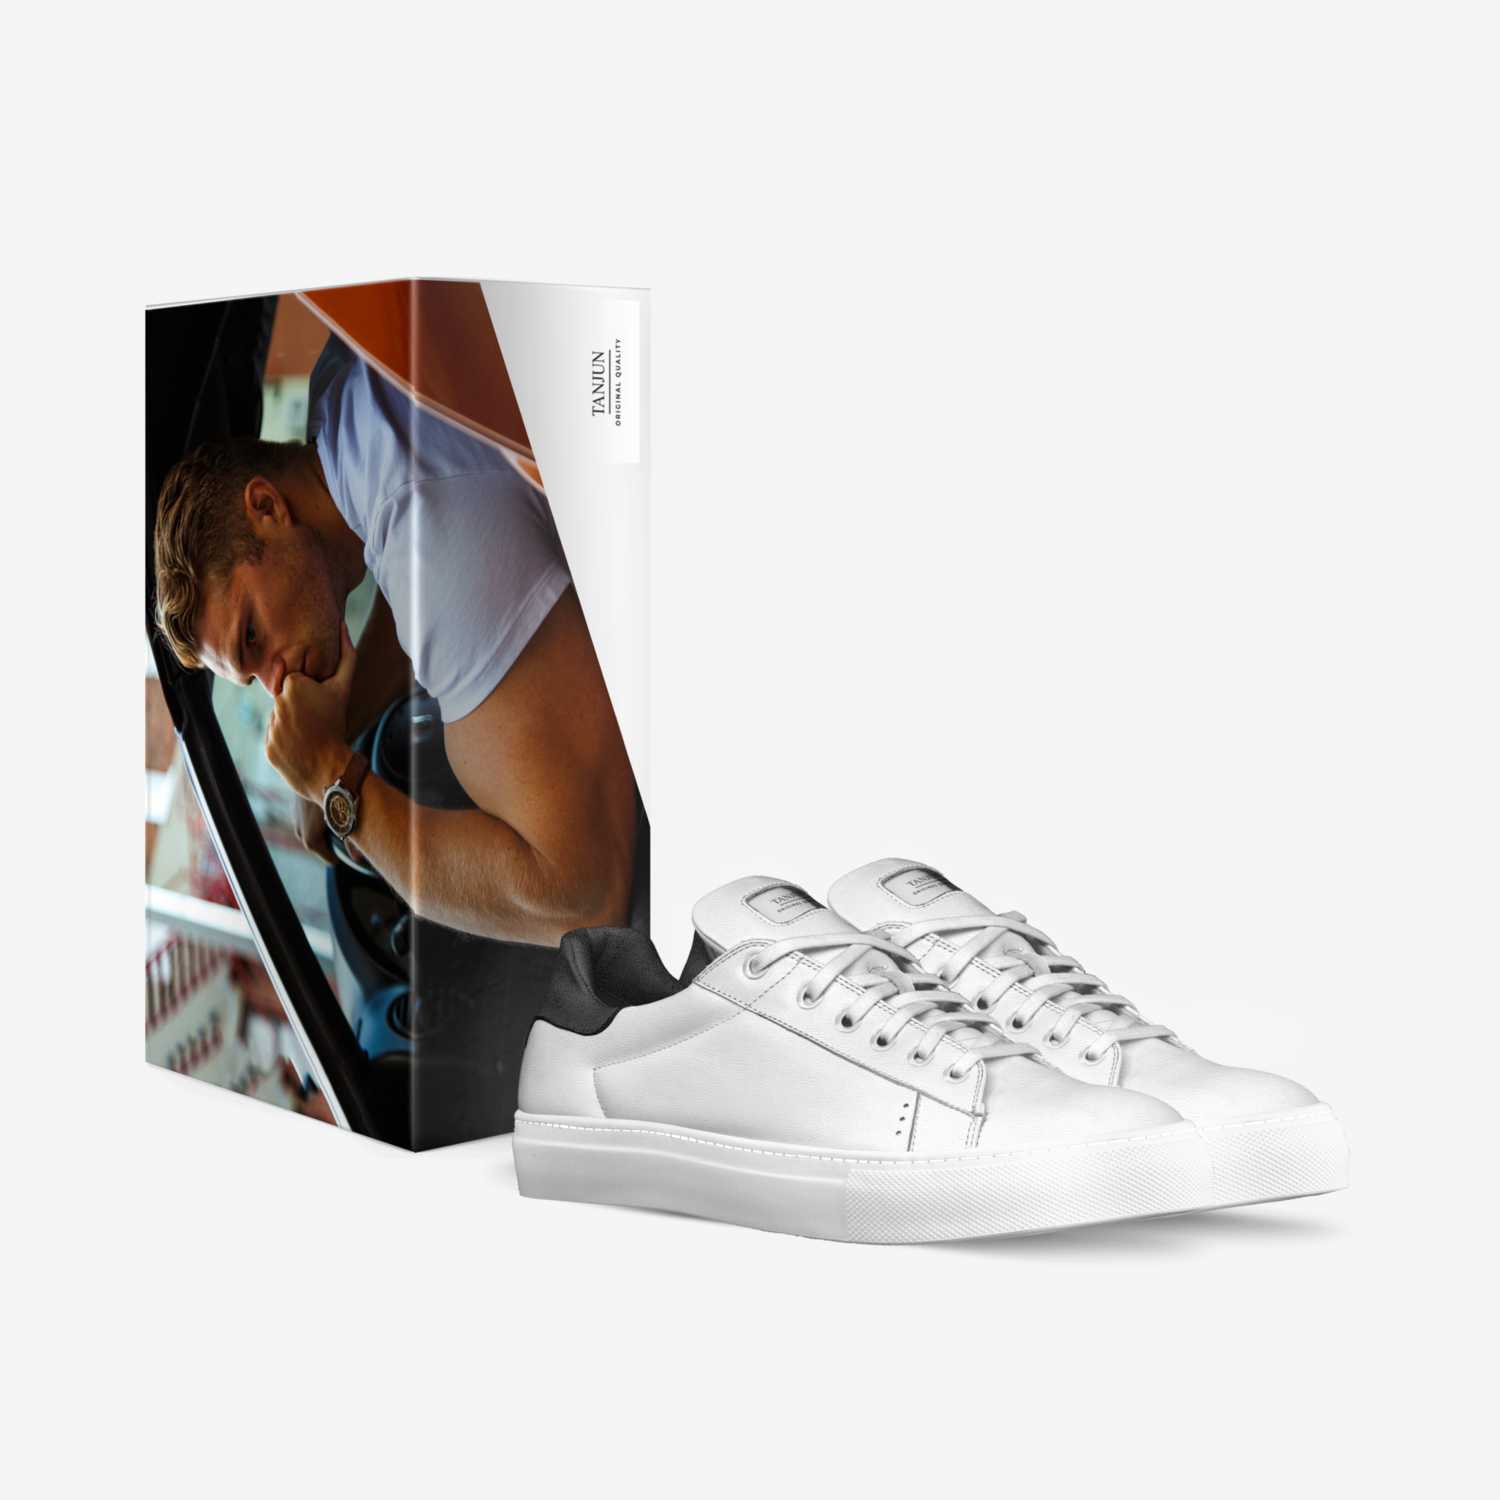 Tanjun custom made in Italy shoes by Darius Bradley | Box view